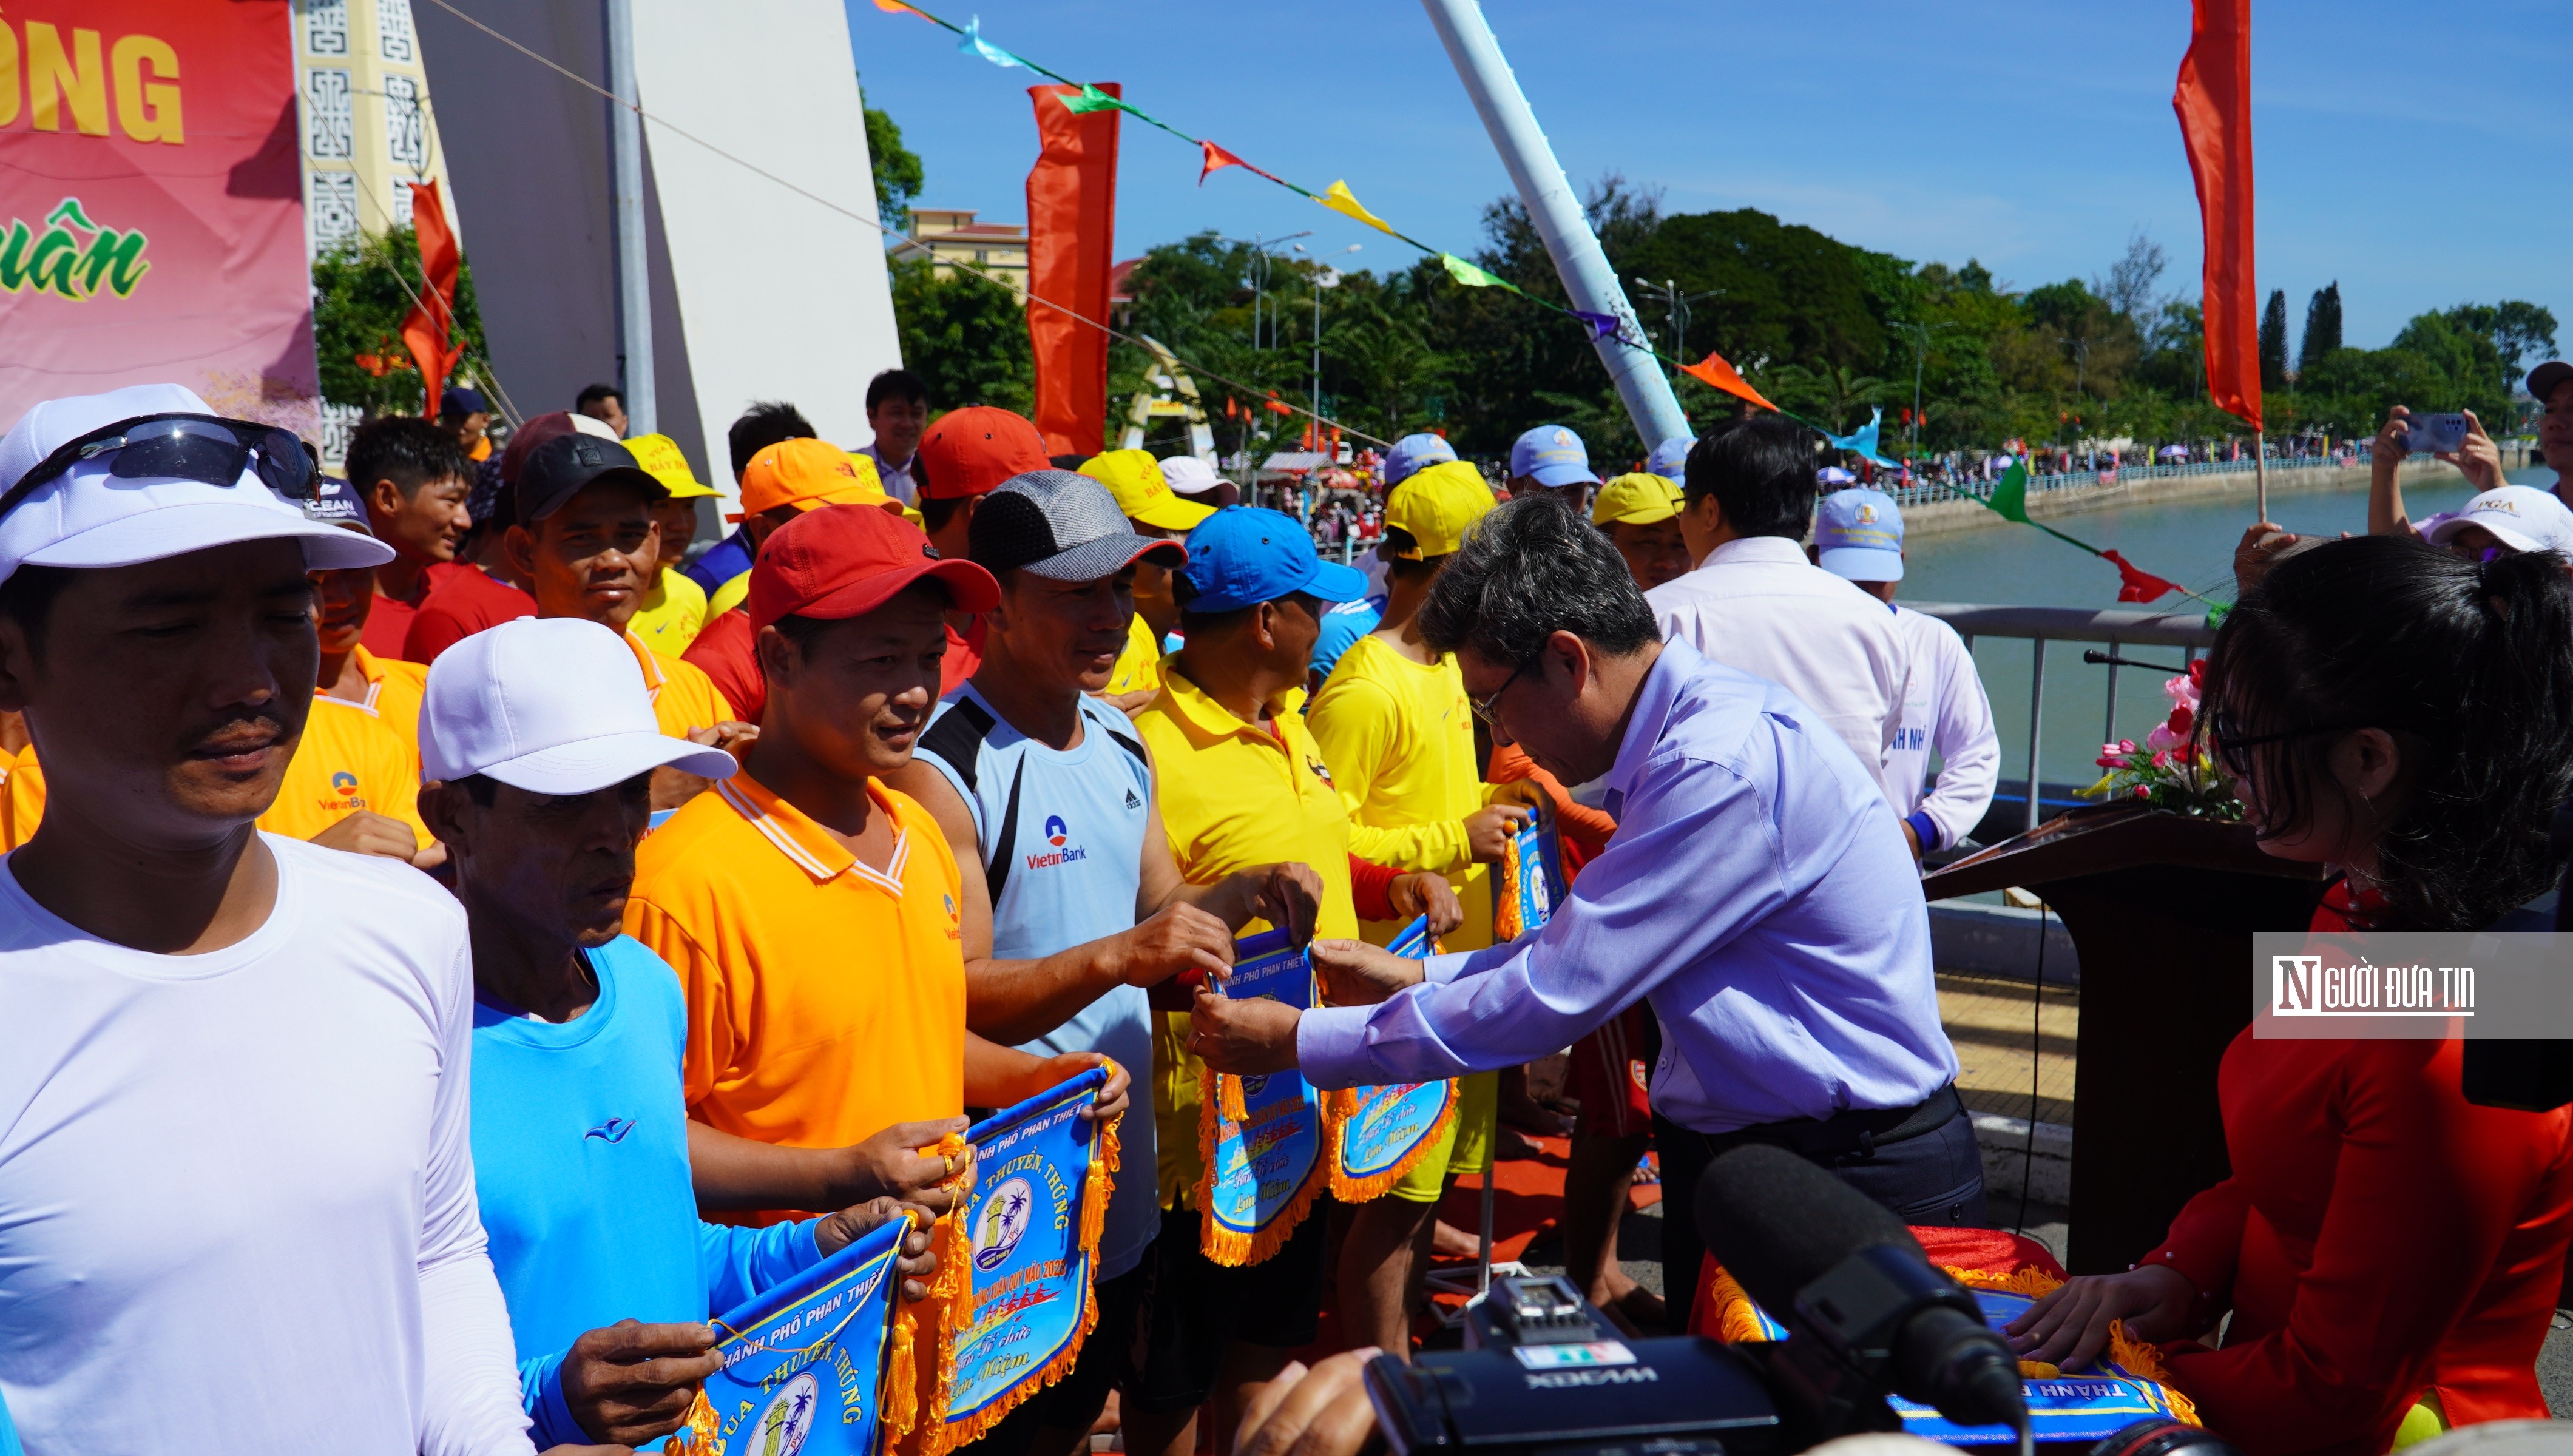 Văn hoá - Bình Thuận: Tưng bừng Lễ hội đua thuyền mừng xuân Quý Mão (Hình 3).